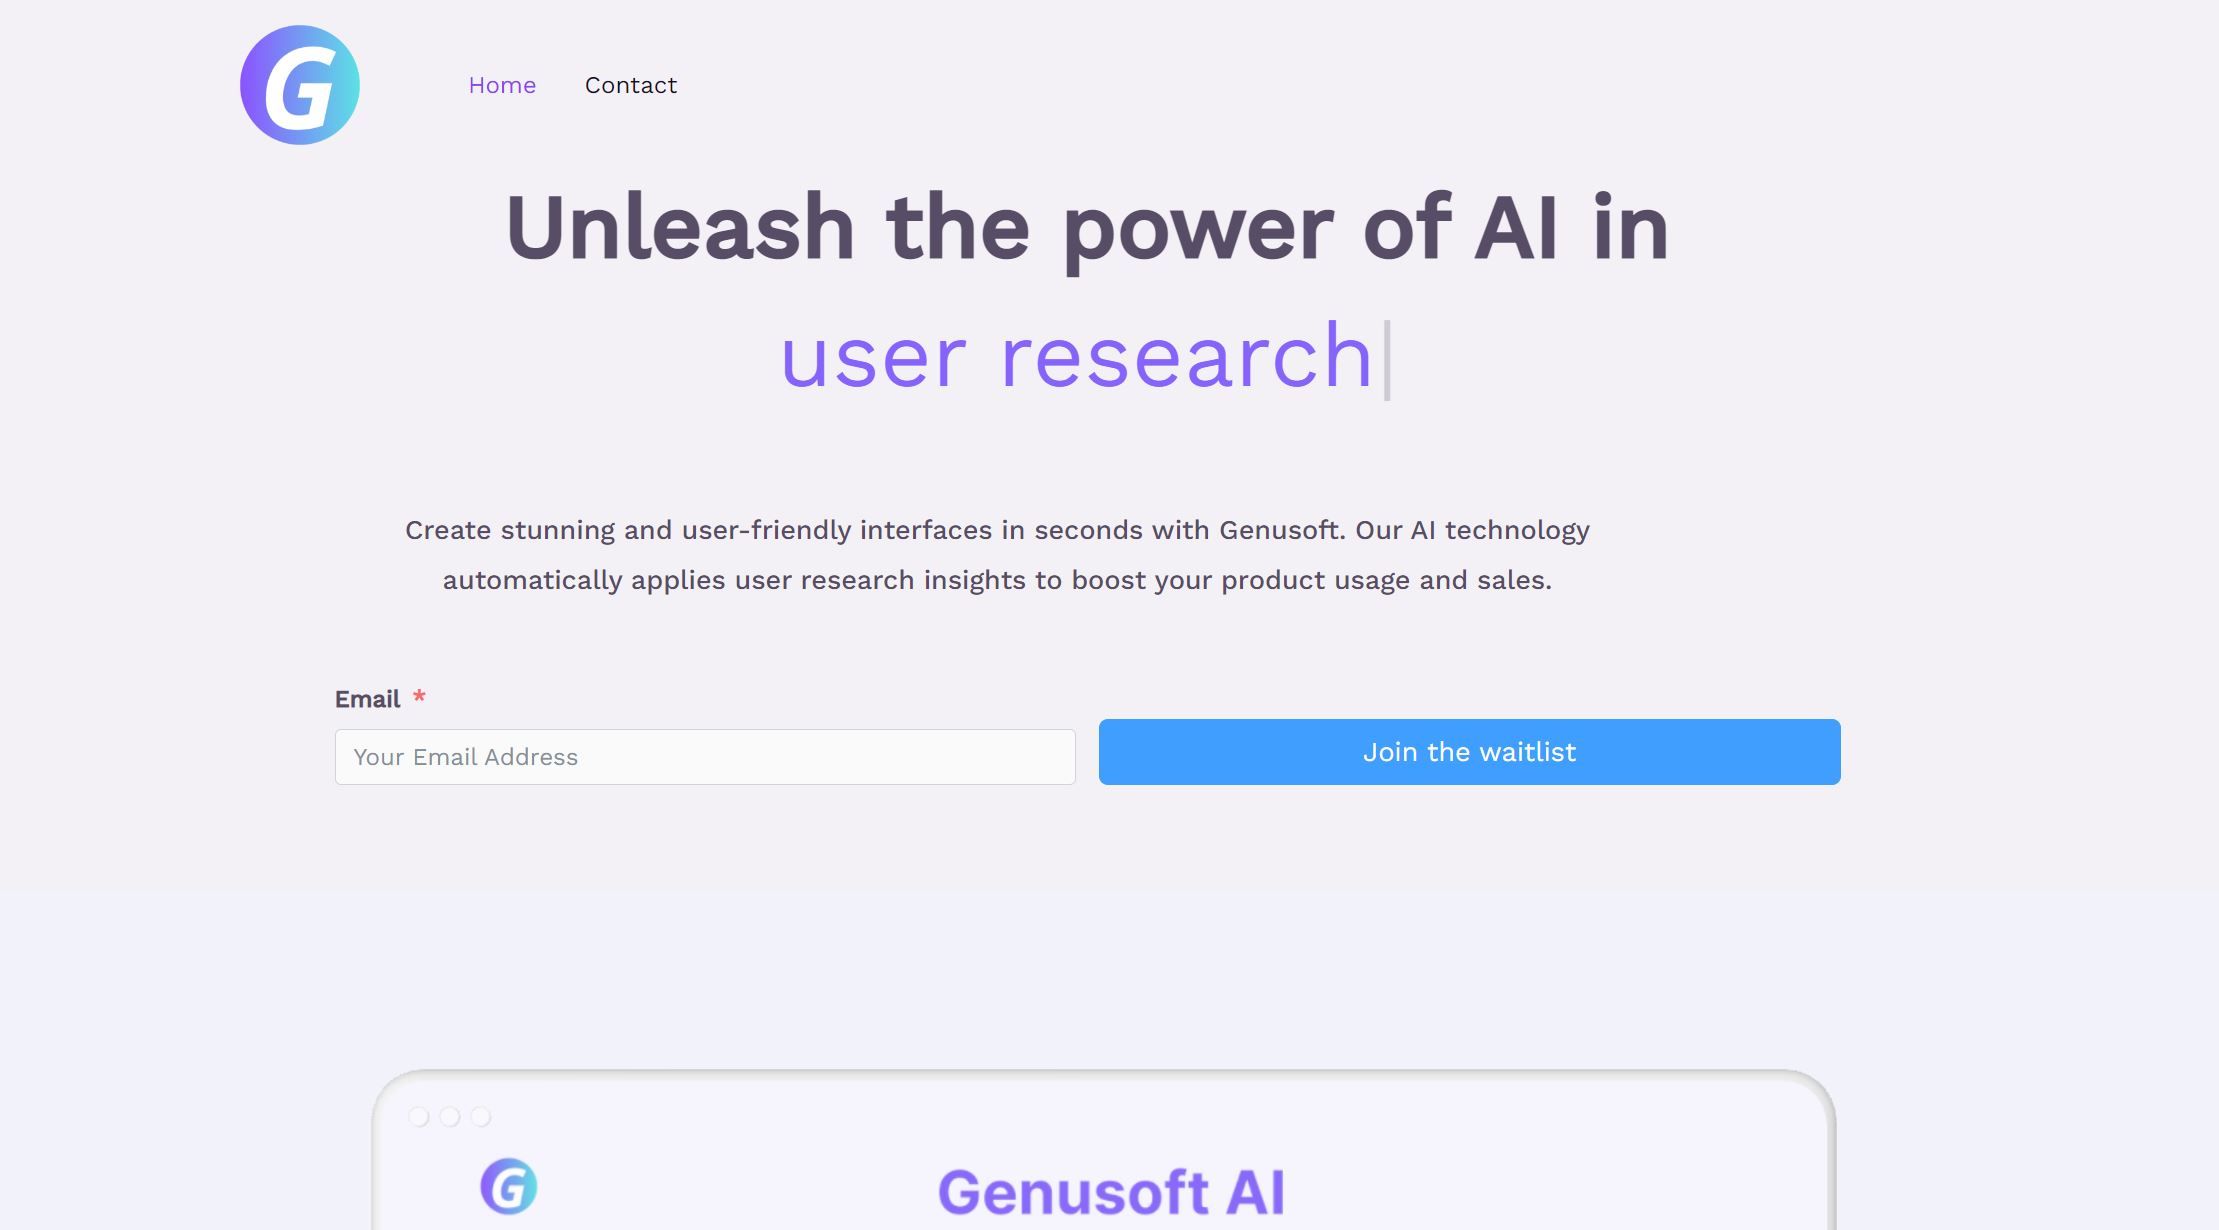 Post: Genusoft AI